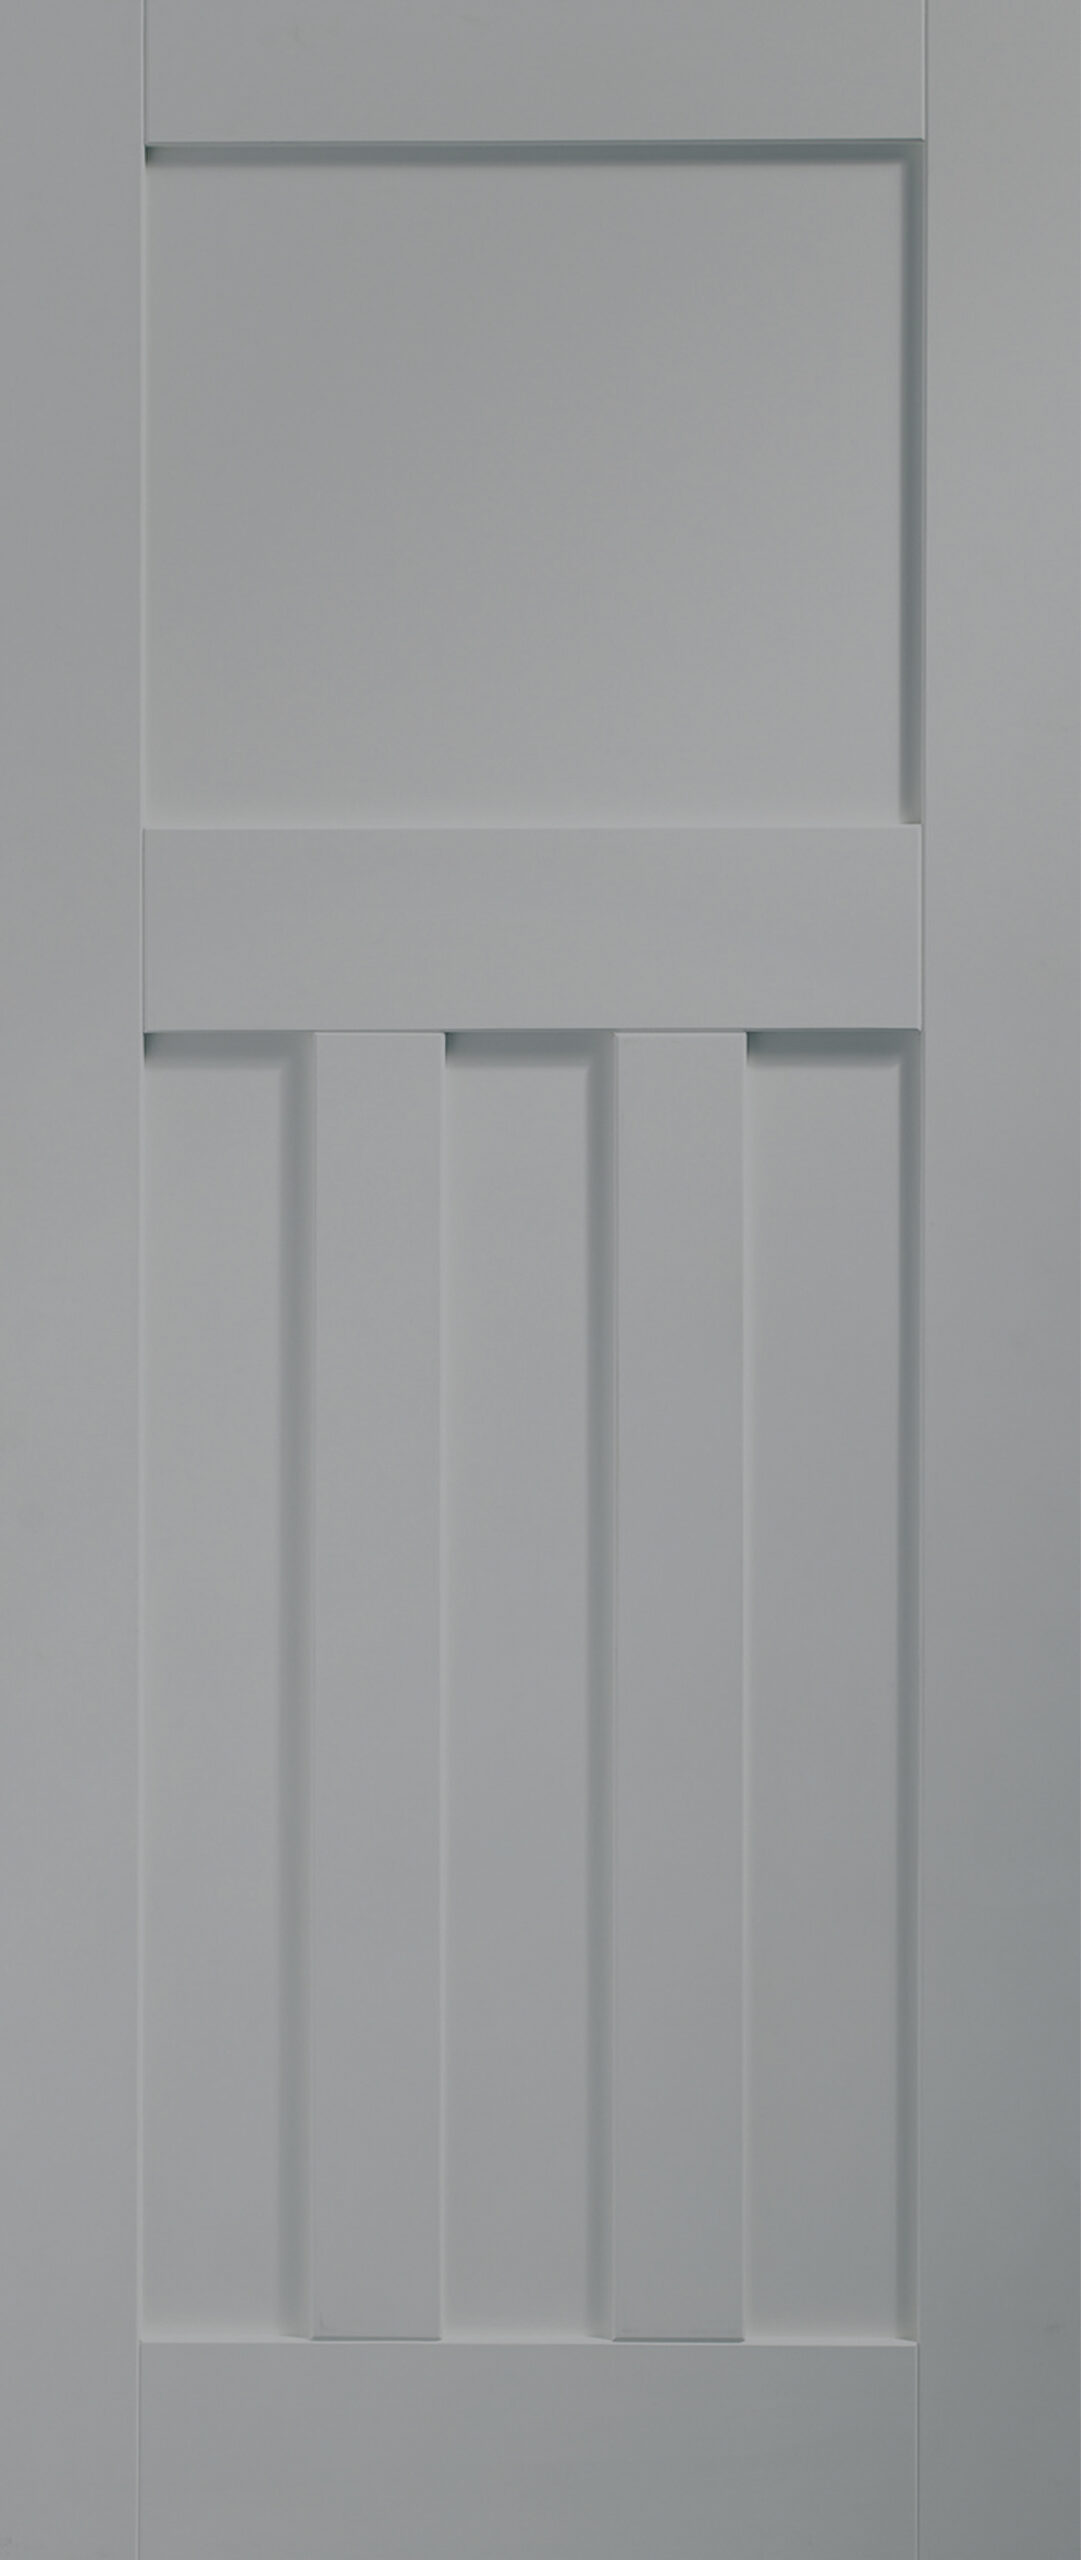 Internal White Primed DX Door Fire Door – 1981 x 686 x 44 mm, Storm